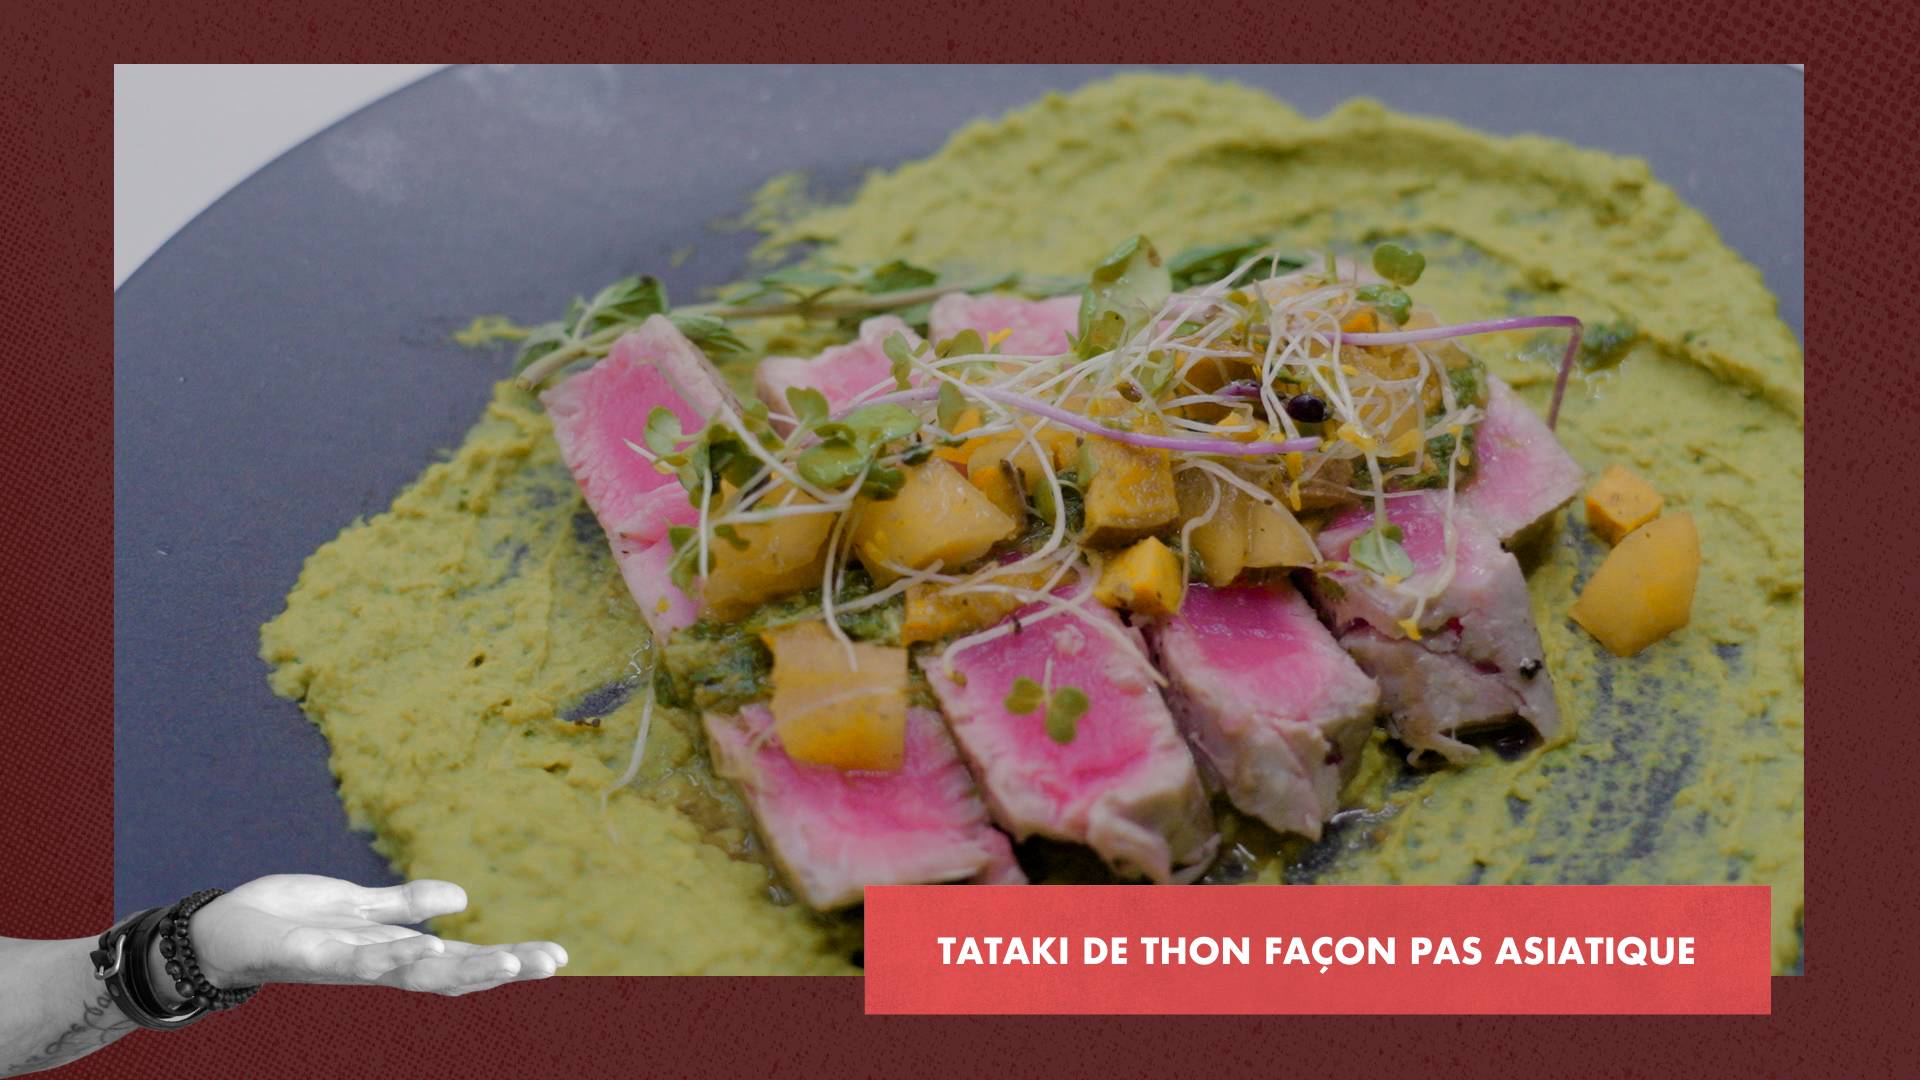 Tataki de thon façon pas asiatique